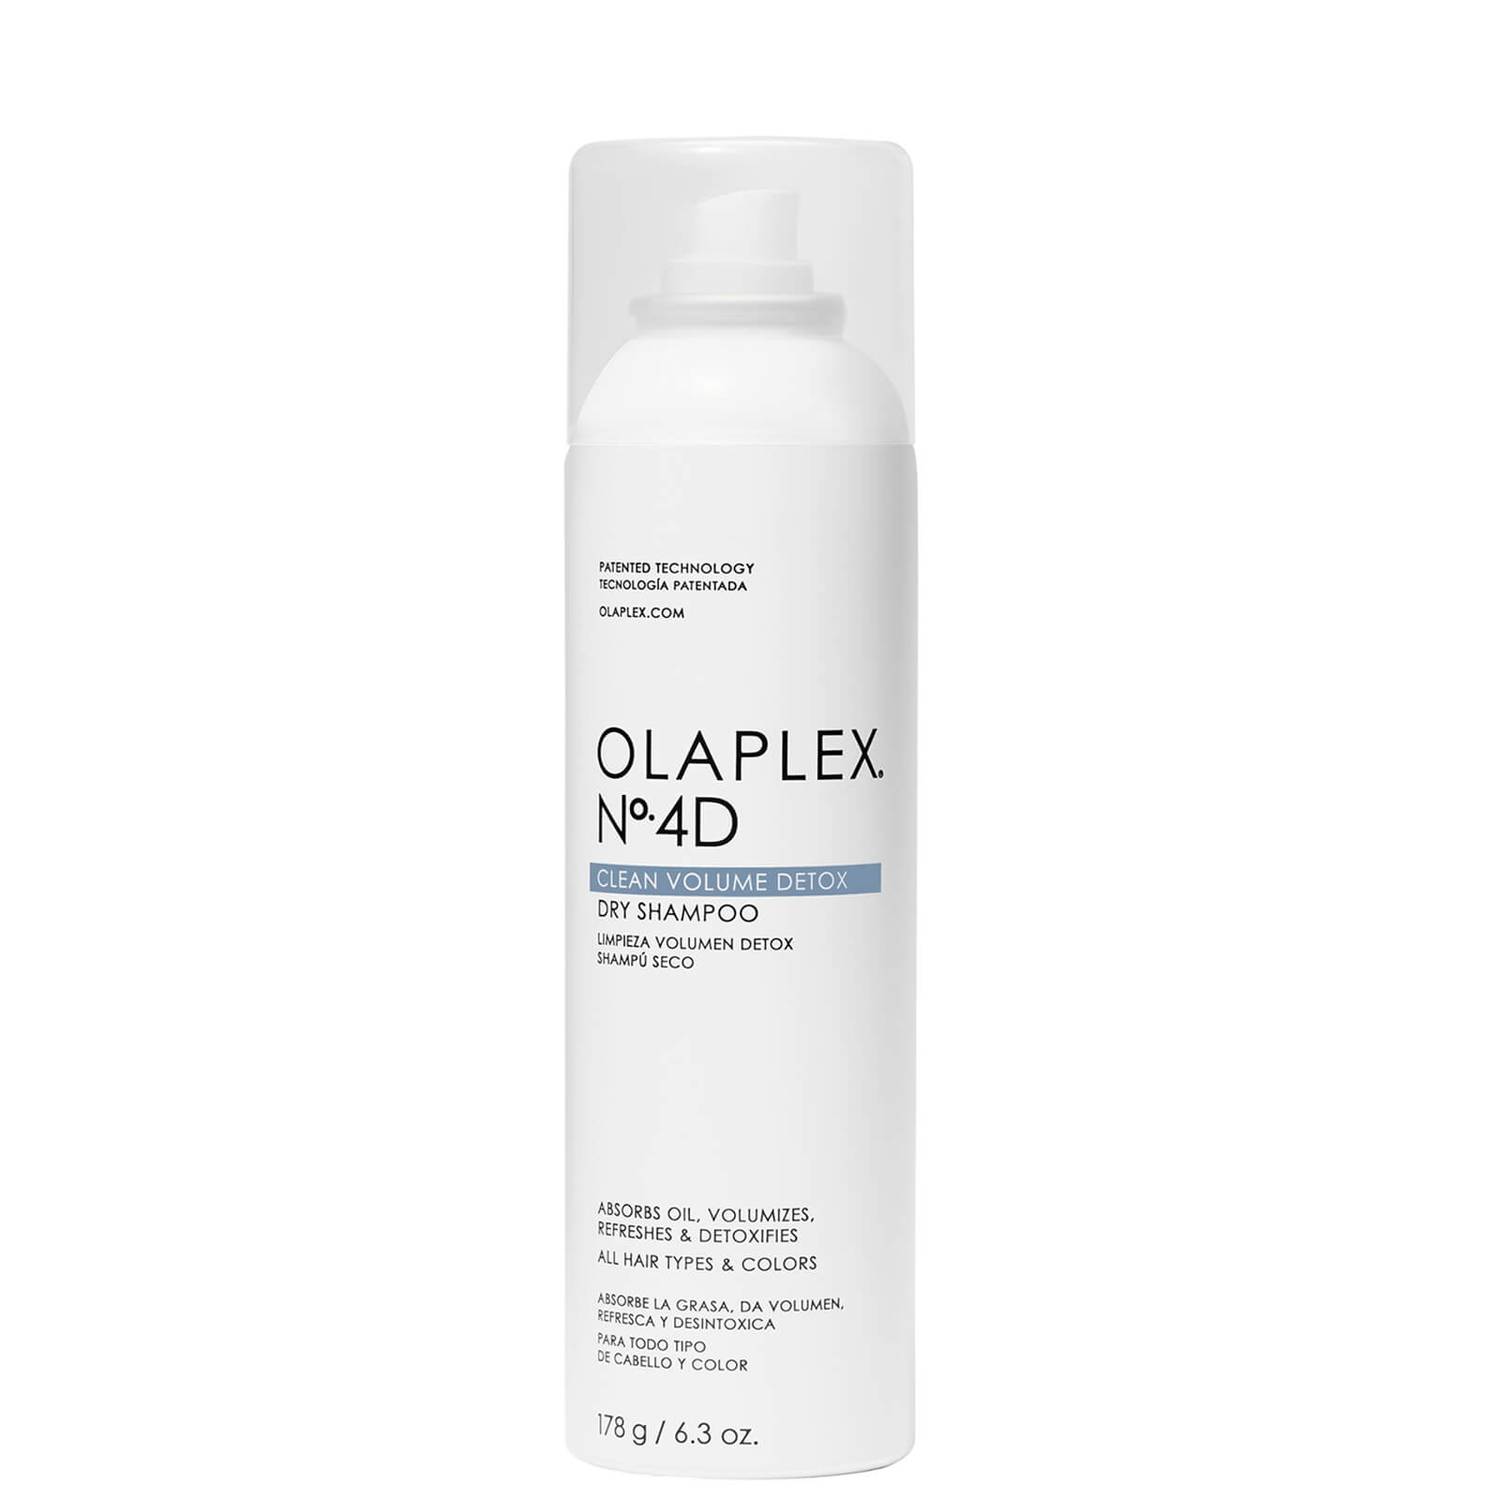 Olaplex Nº.4D Dry Shampoo